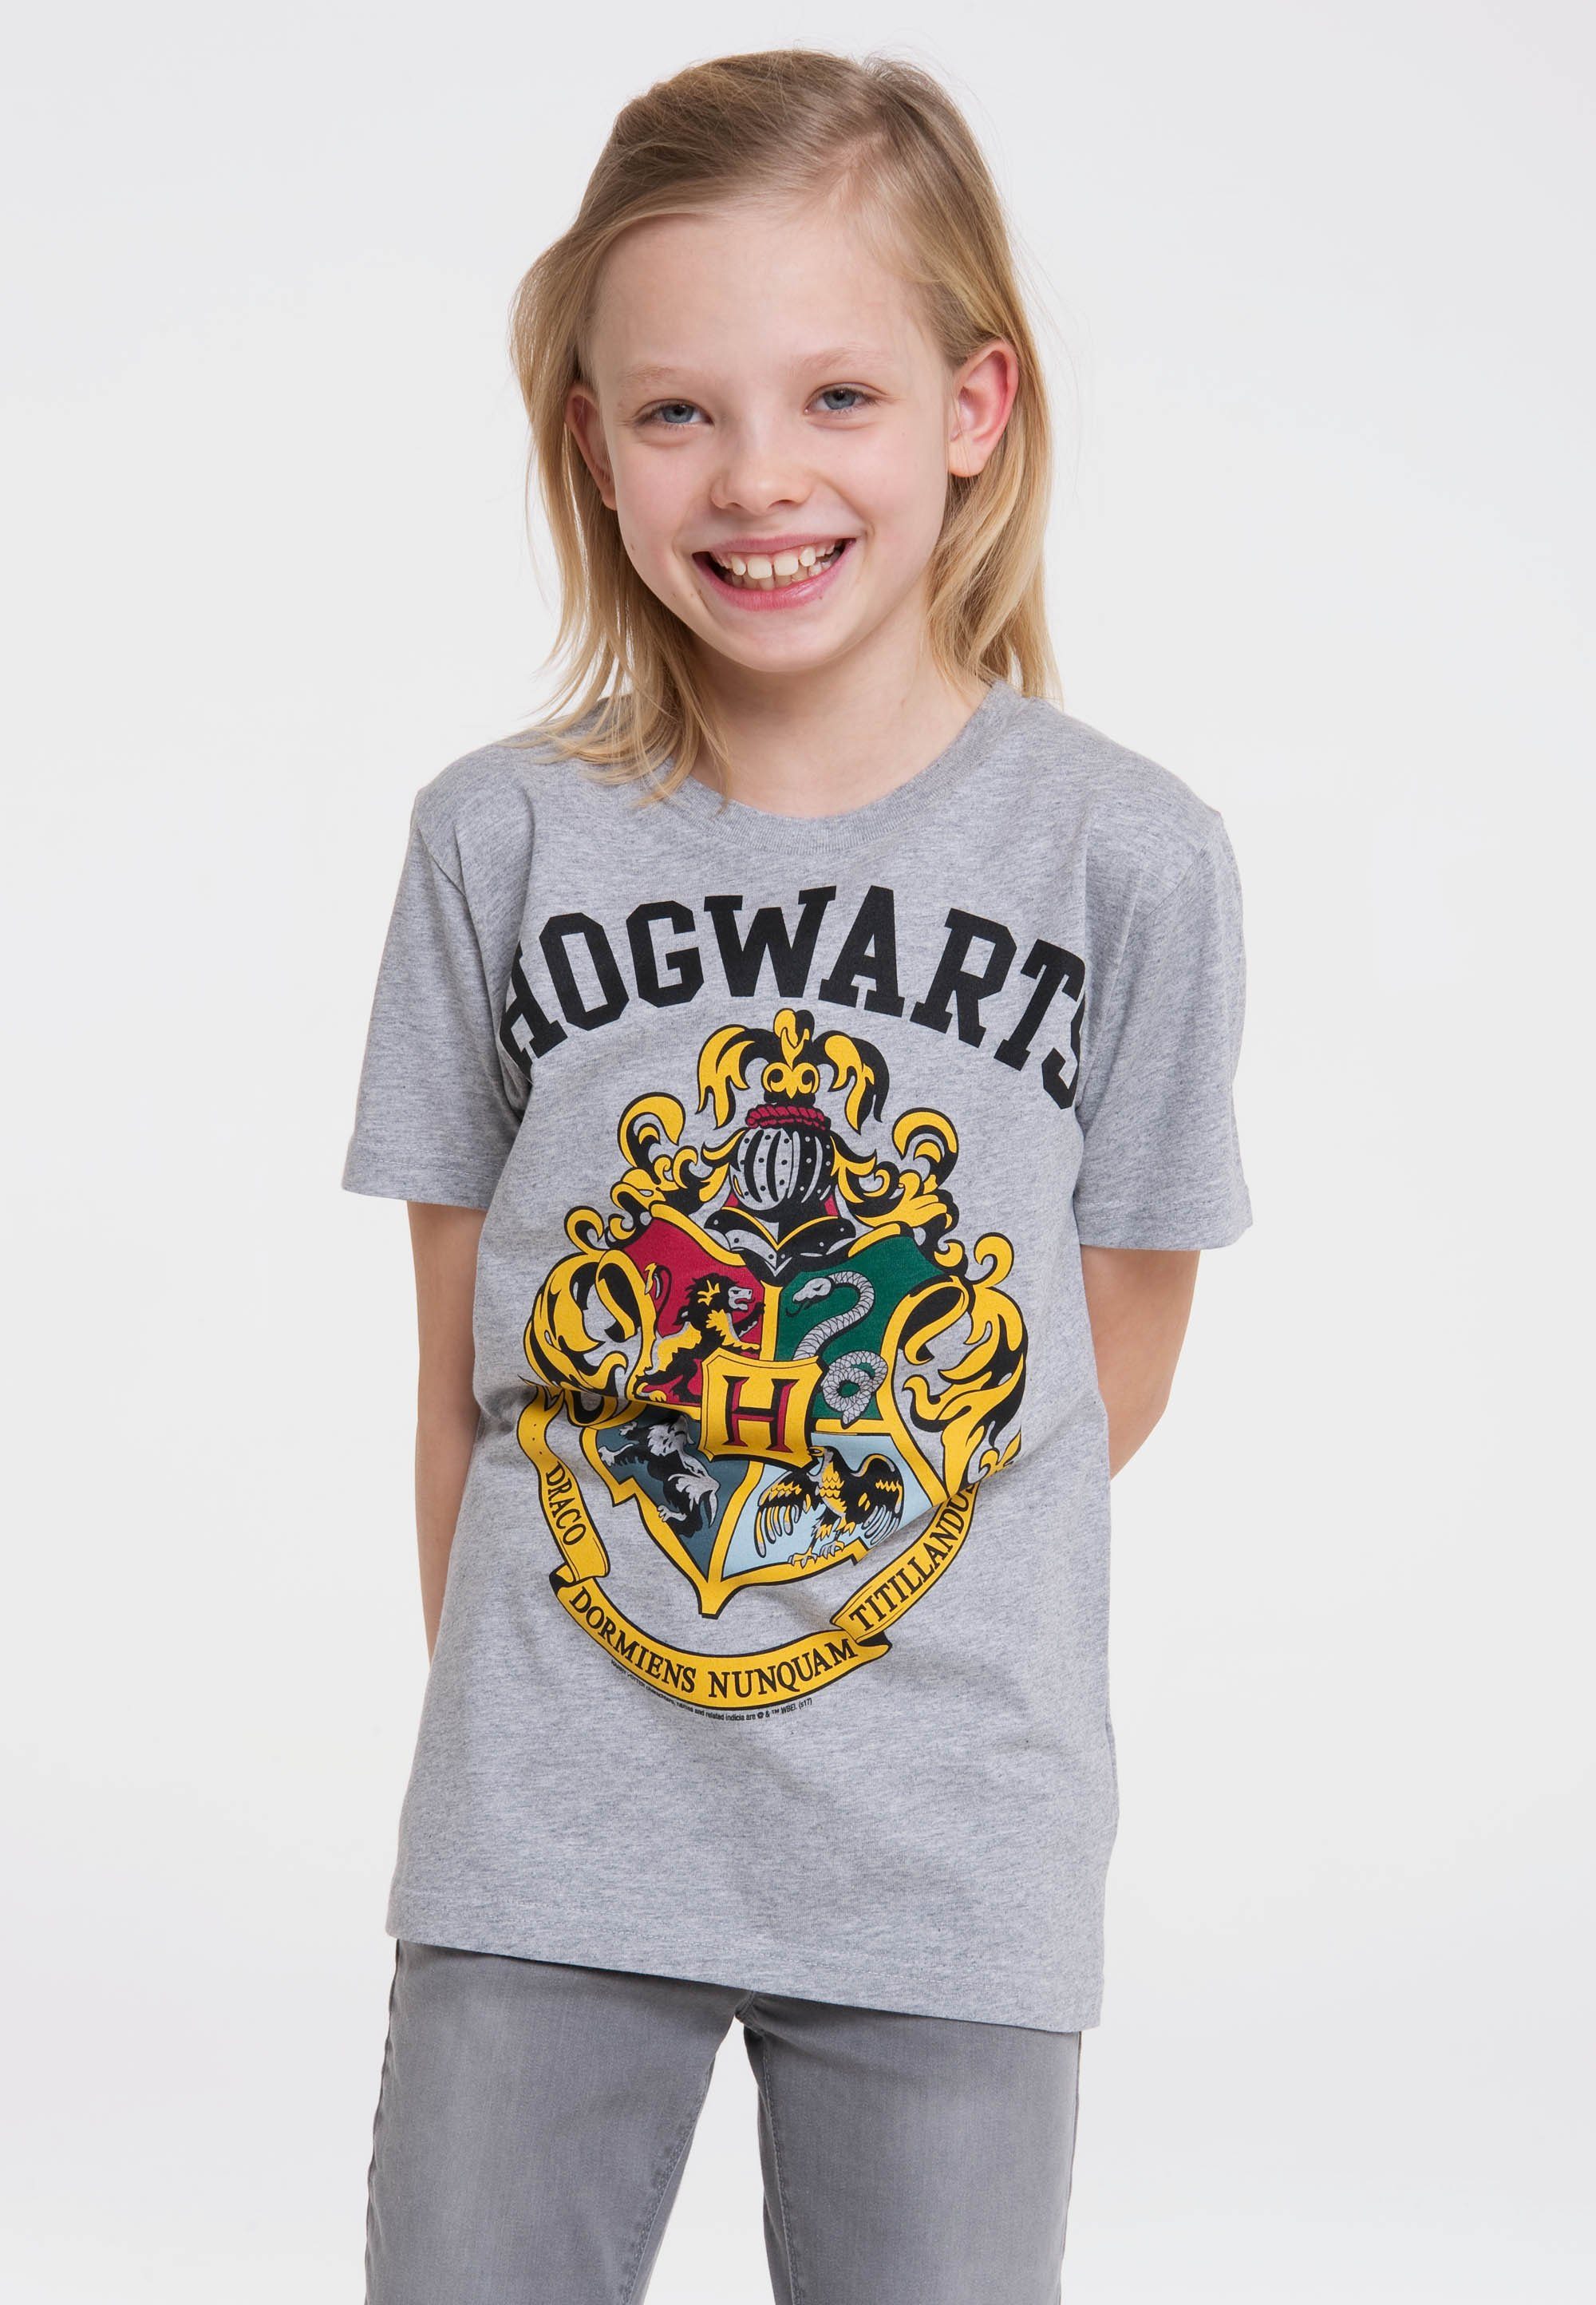 LOGOSHIRT T-Shirt Hogwarts mit lässigem Frontprint